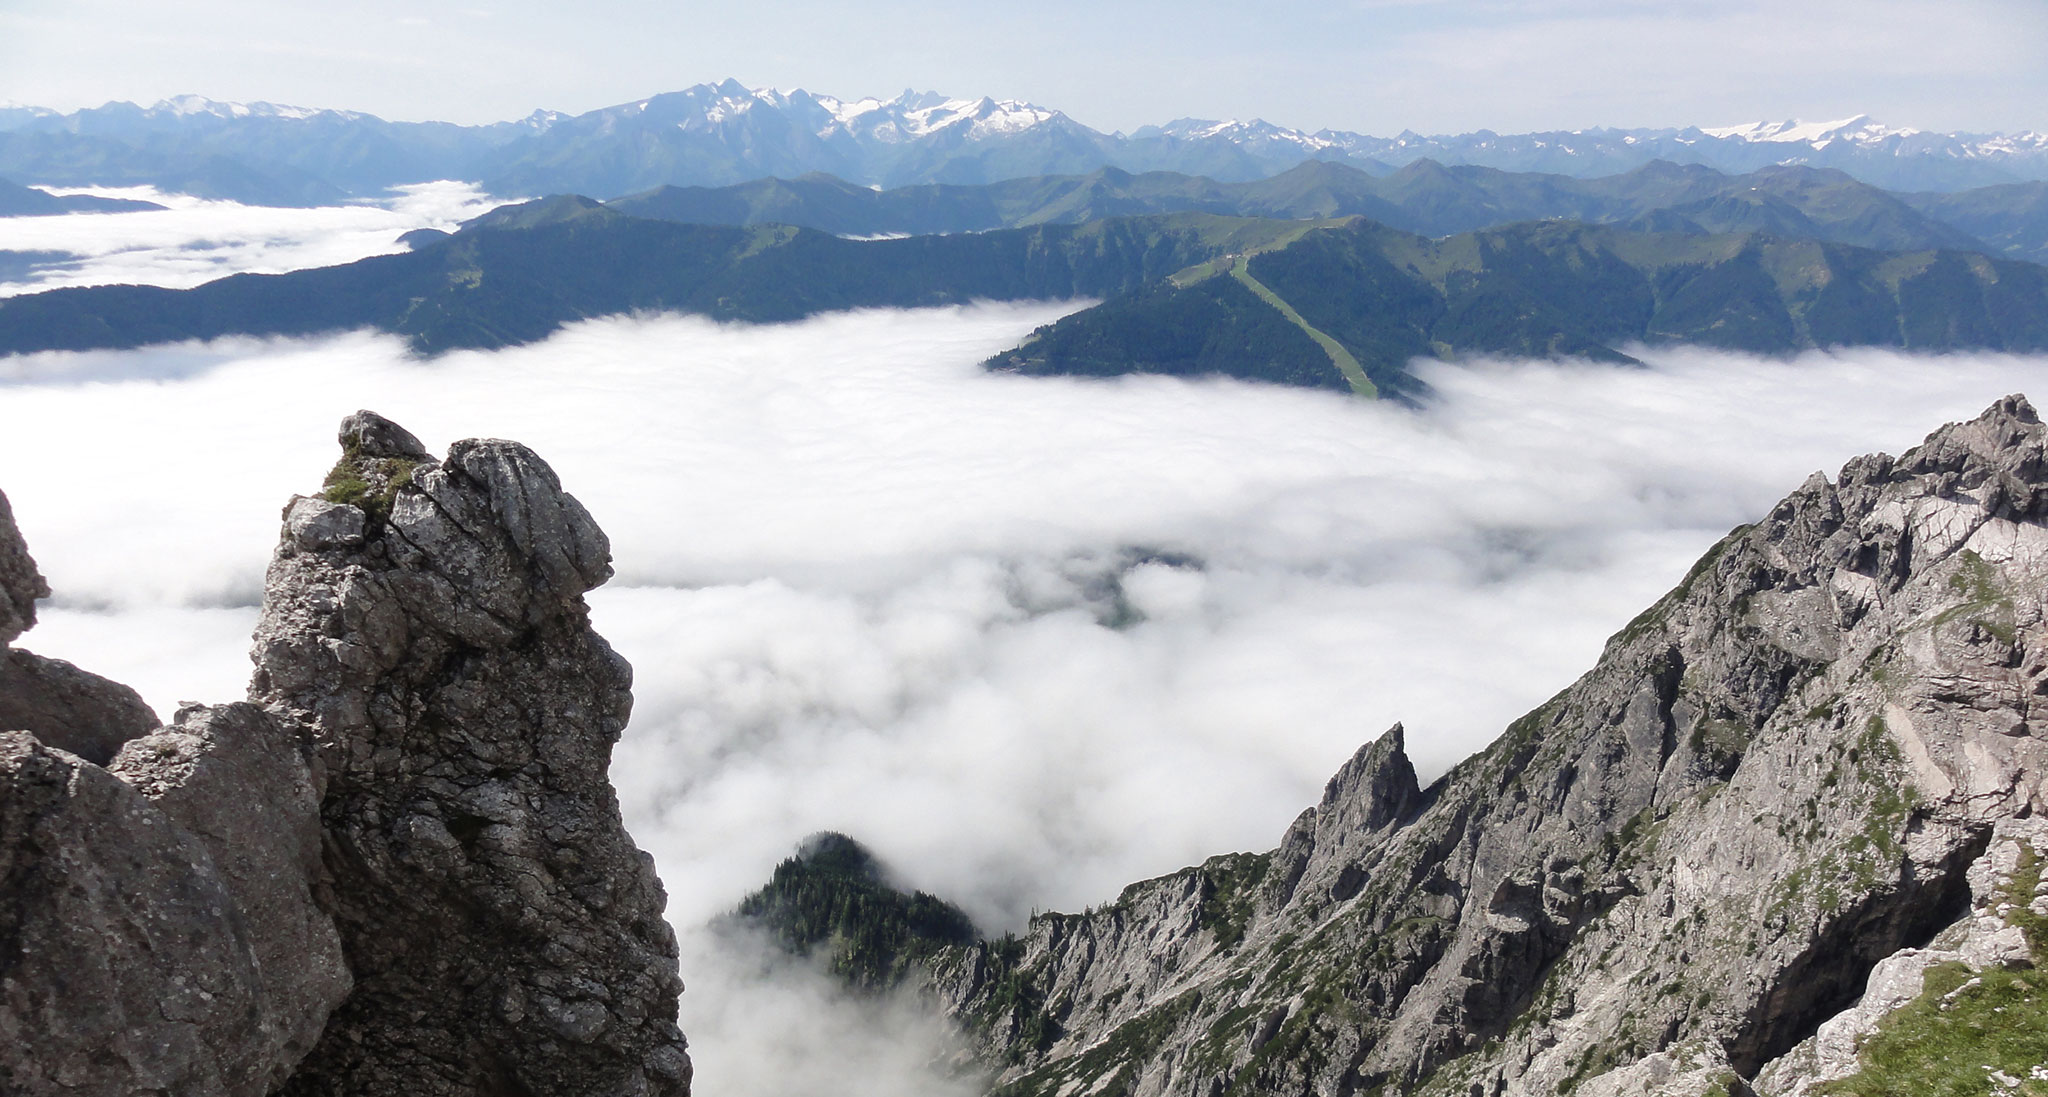 Arnoweg: Großartige Aussicht über dem Wolkenmeer bis zum Großglockner und Großvenediger am Alpenhauptkamm